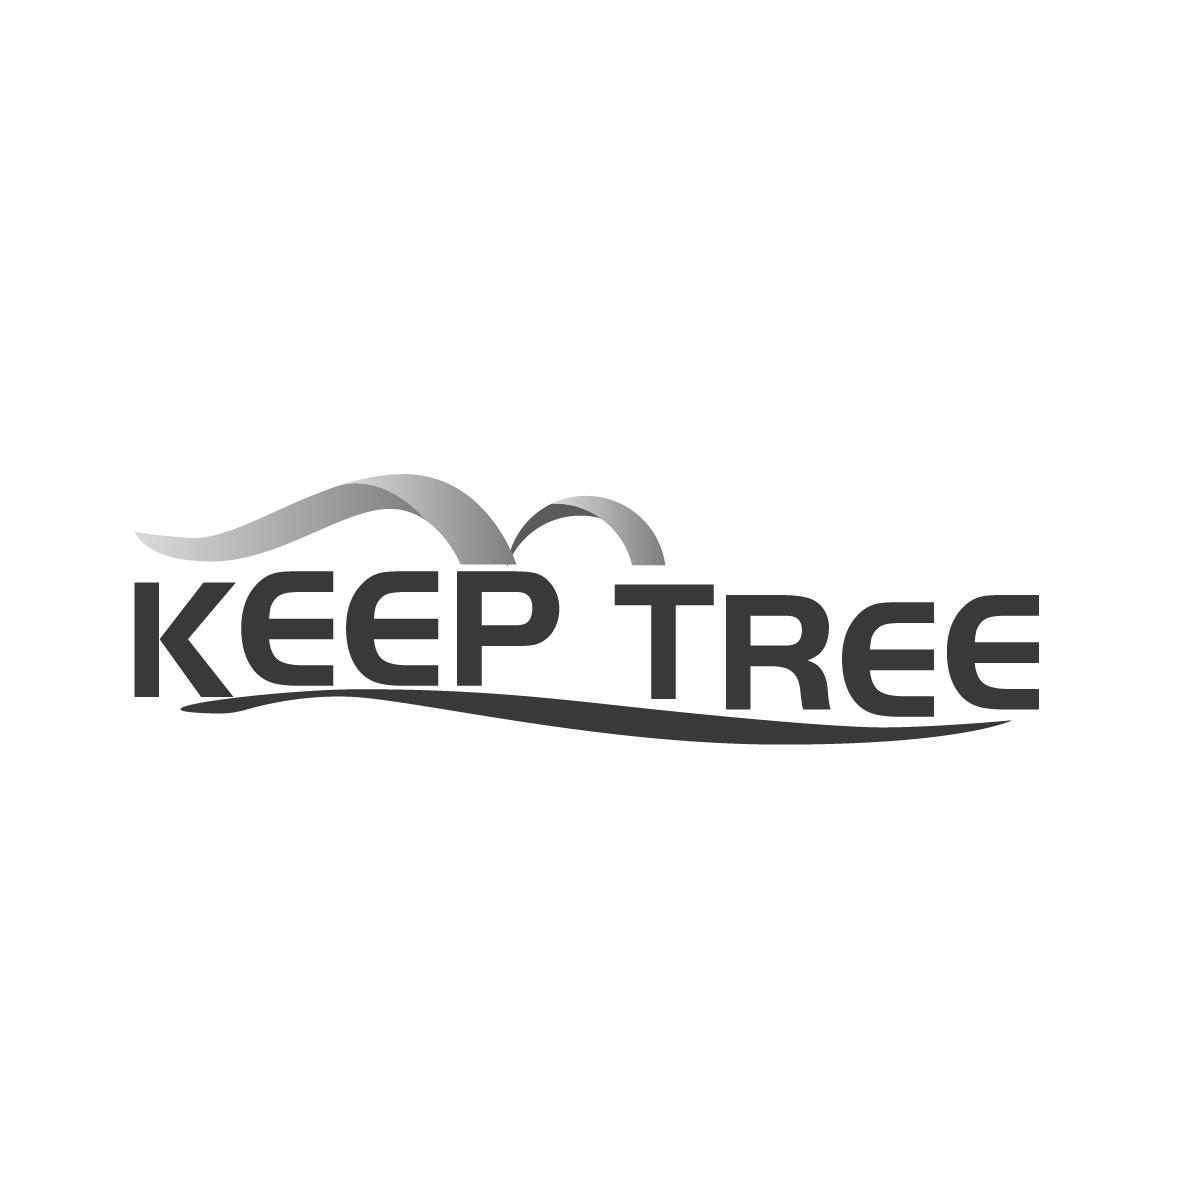 KEEP TREE